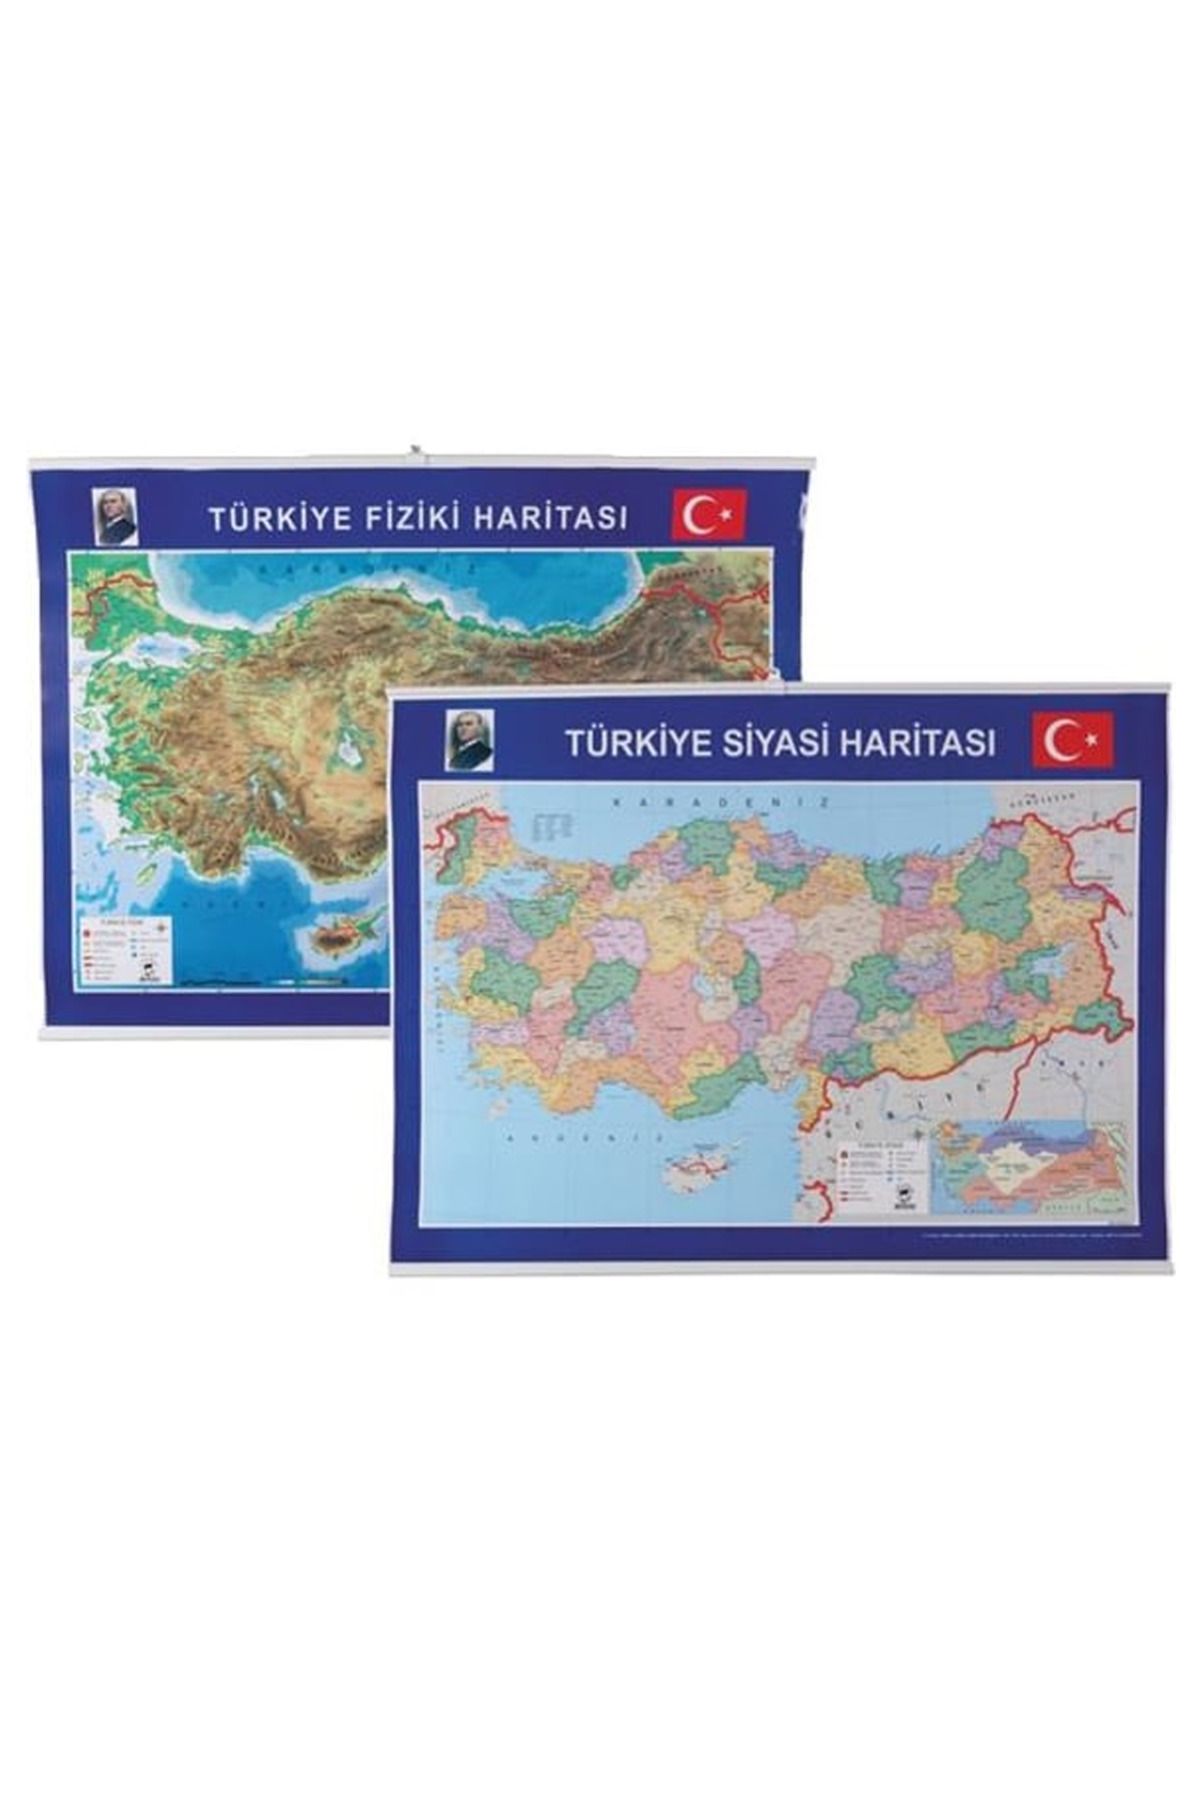 Toptan Bulurum Gülpaş Türkiye Fiziki ve Siyasi Harita Çıtalı